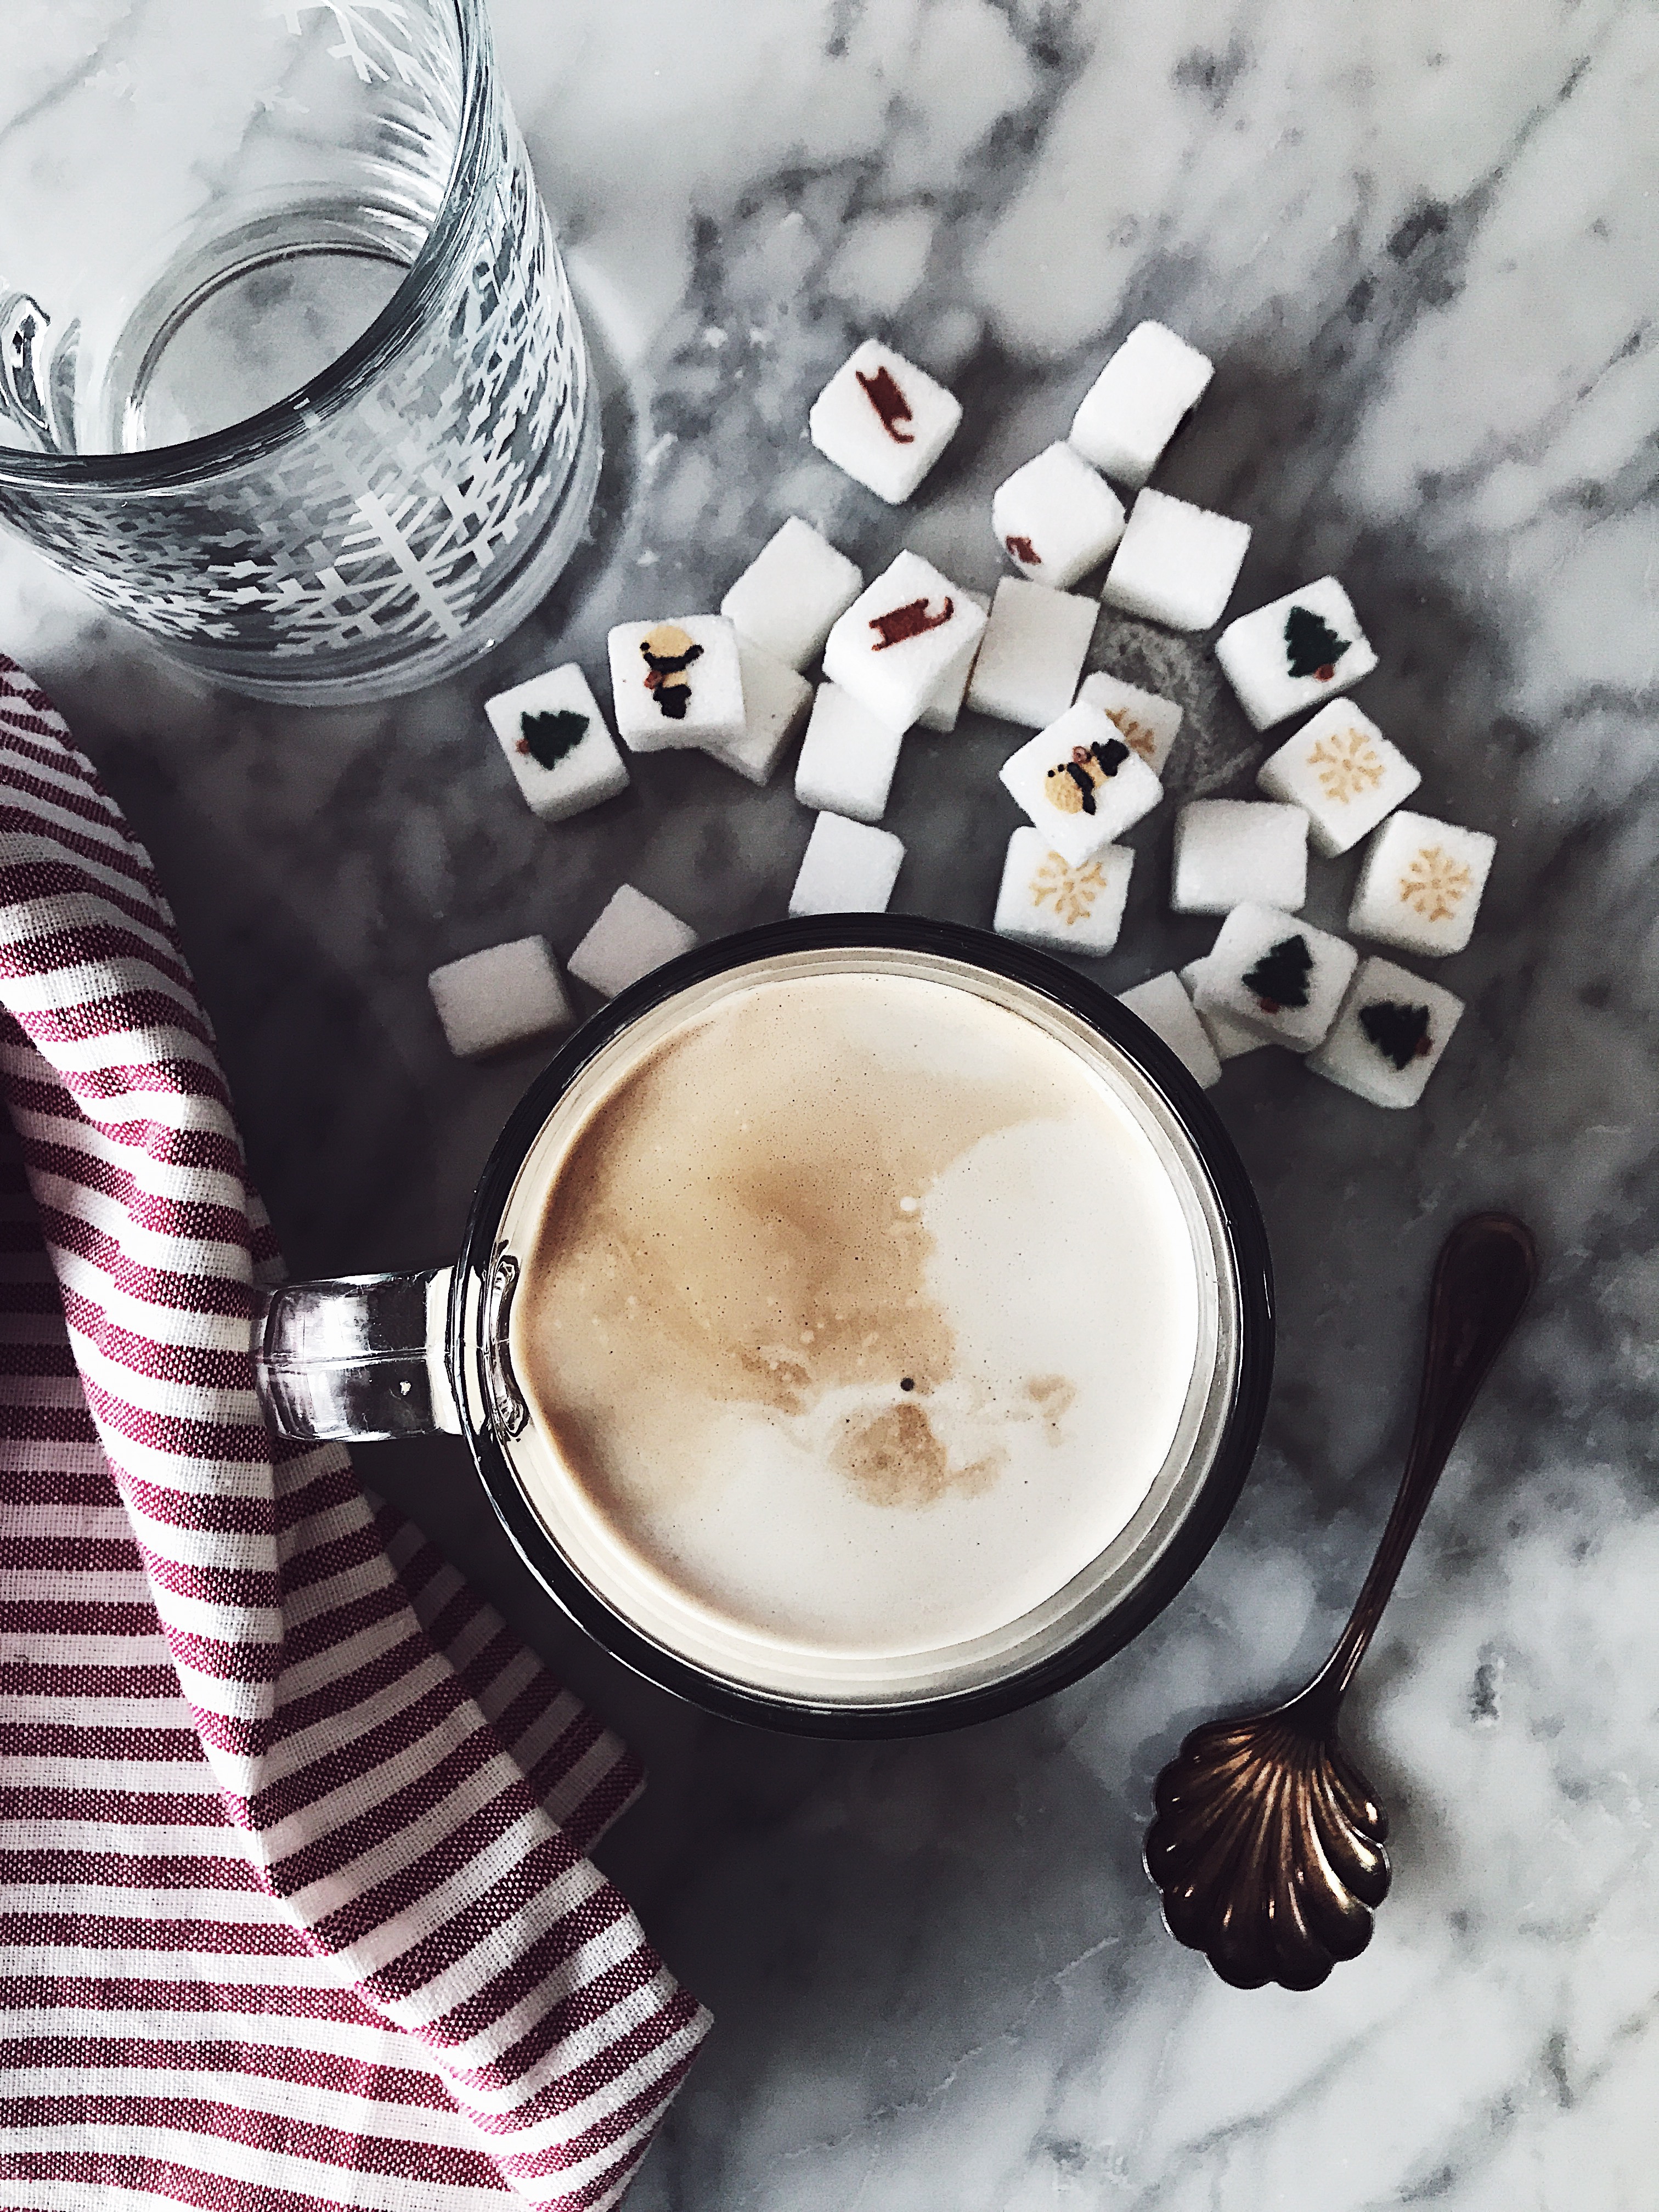 latte macchiato recipe with decorated sugar cubes